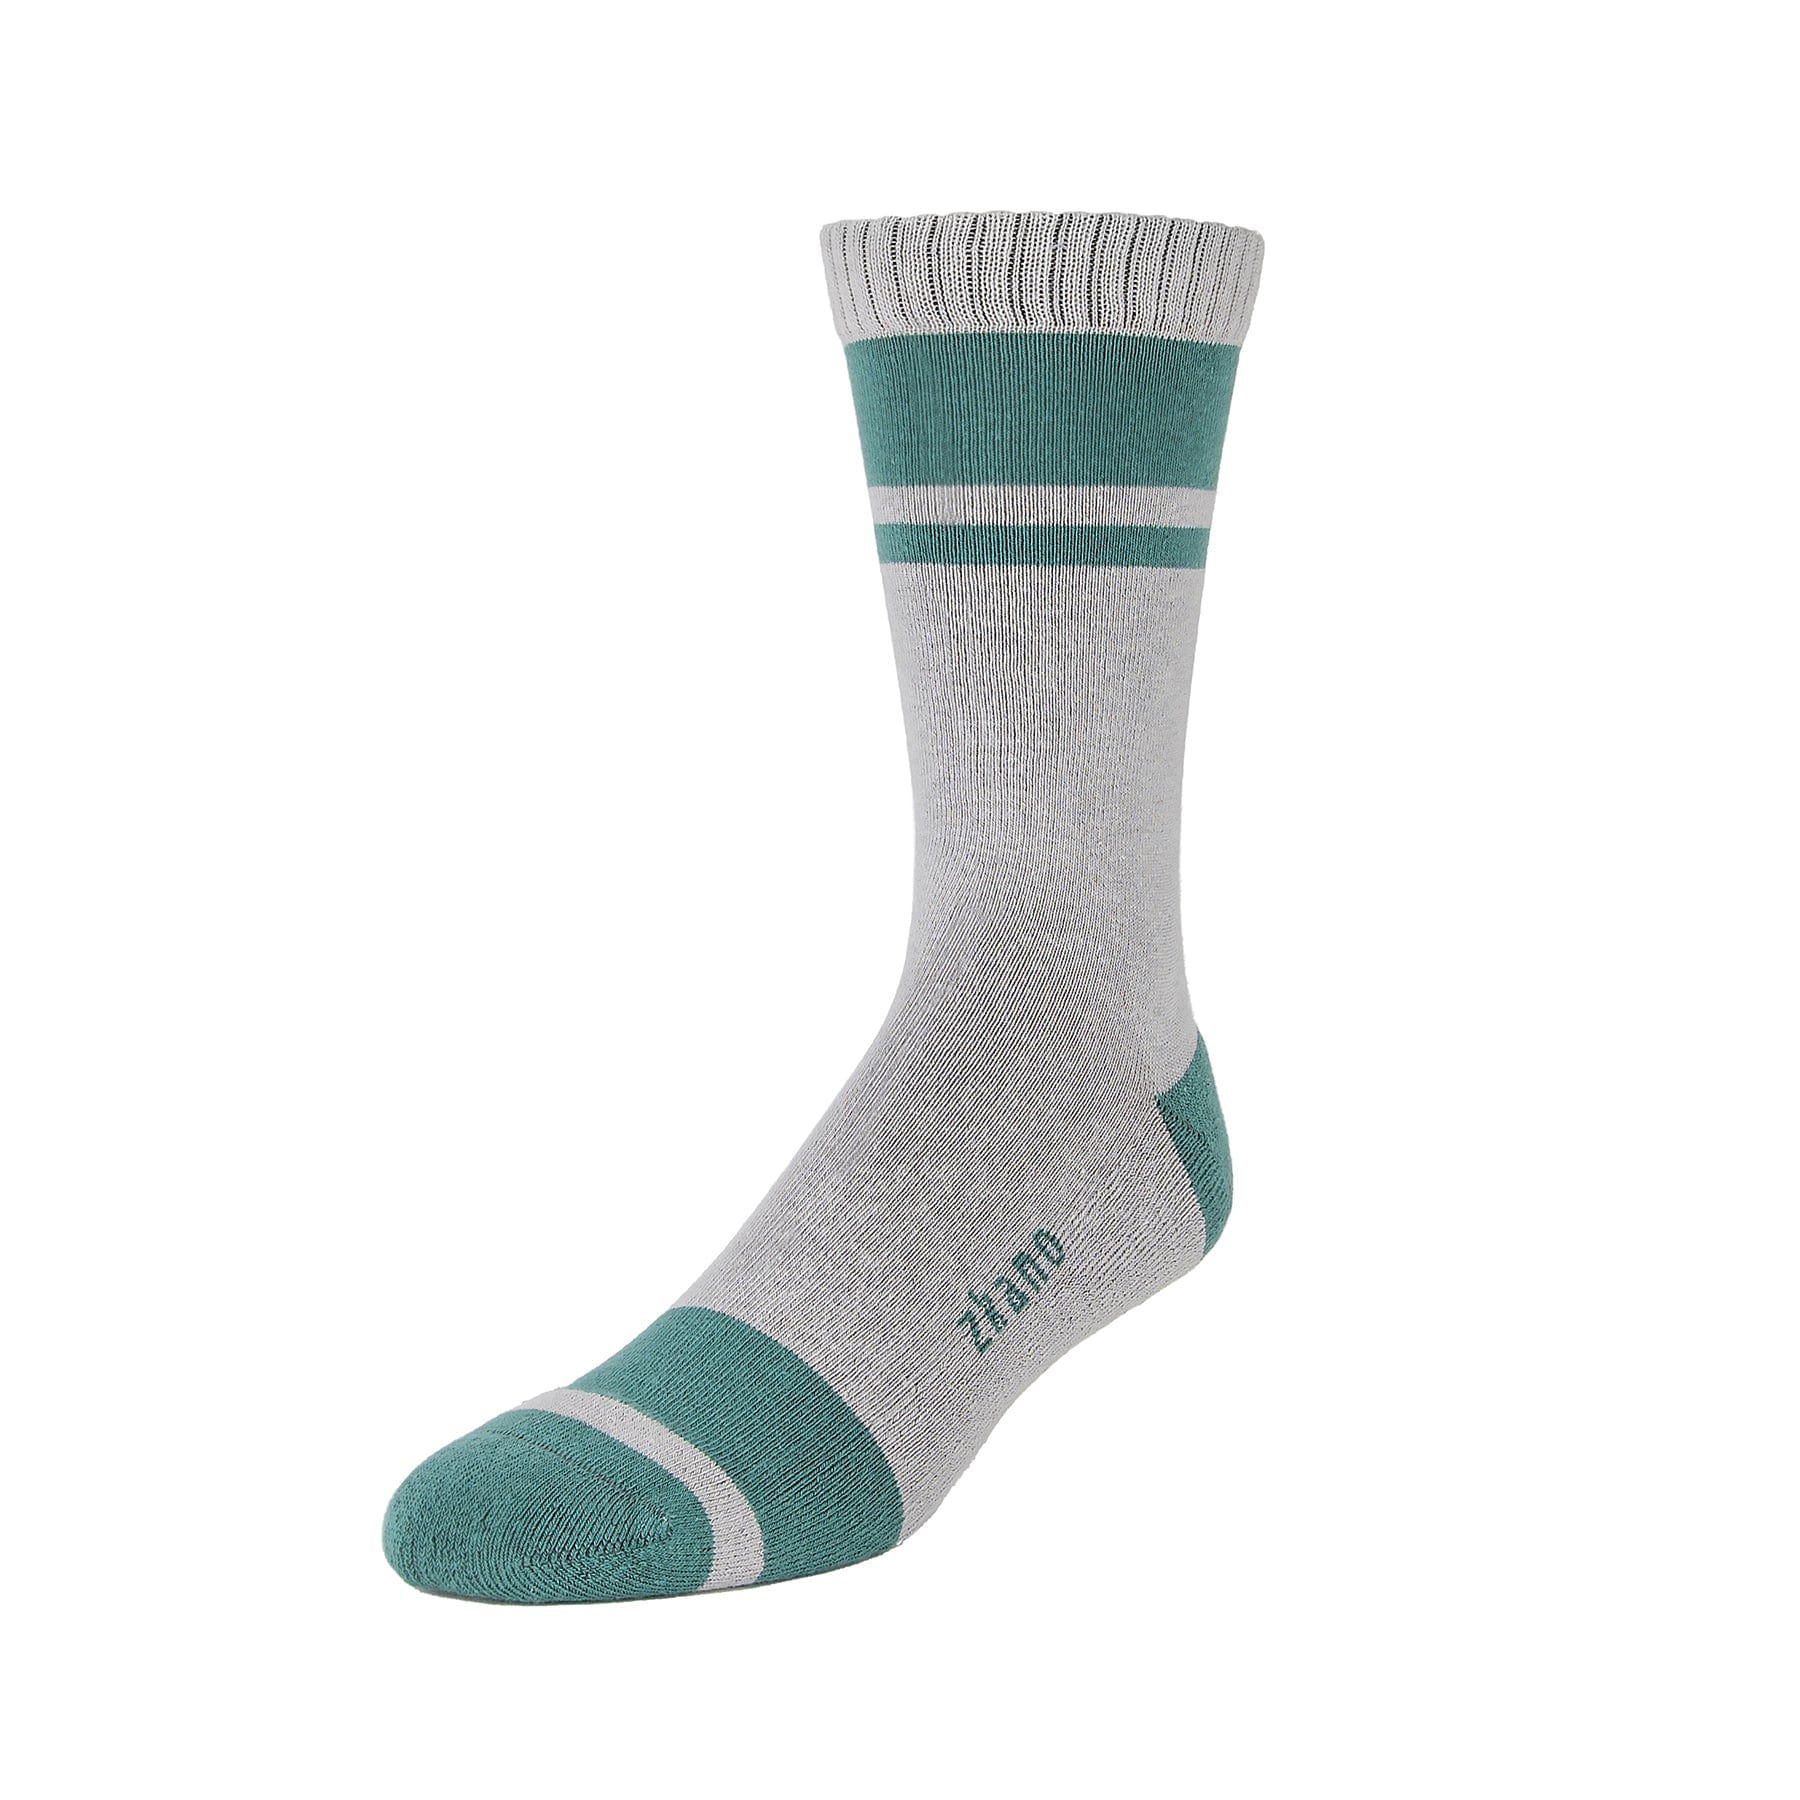 Little River - Organic Cushion Cotton zkano Fir - Crew Socks – socks